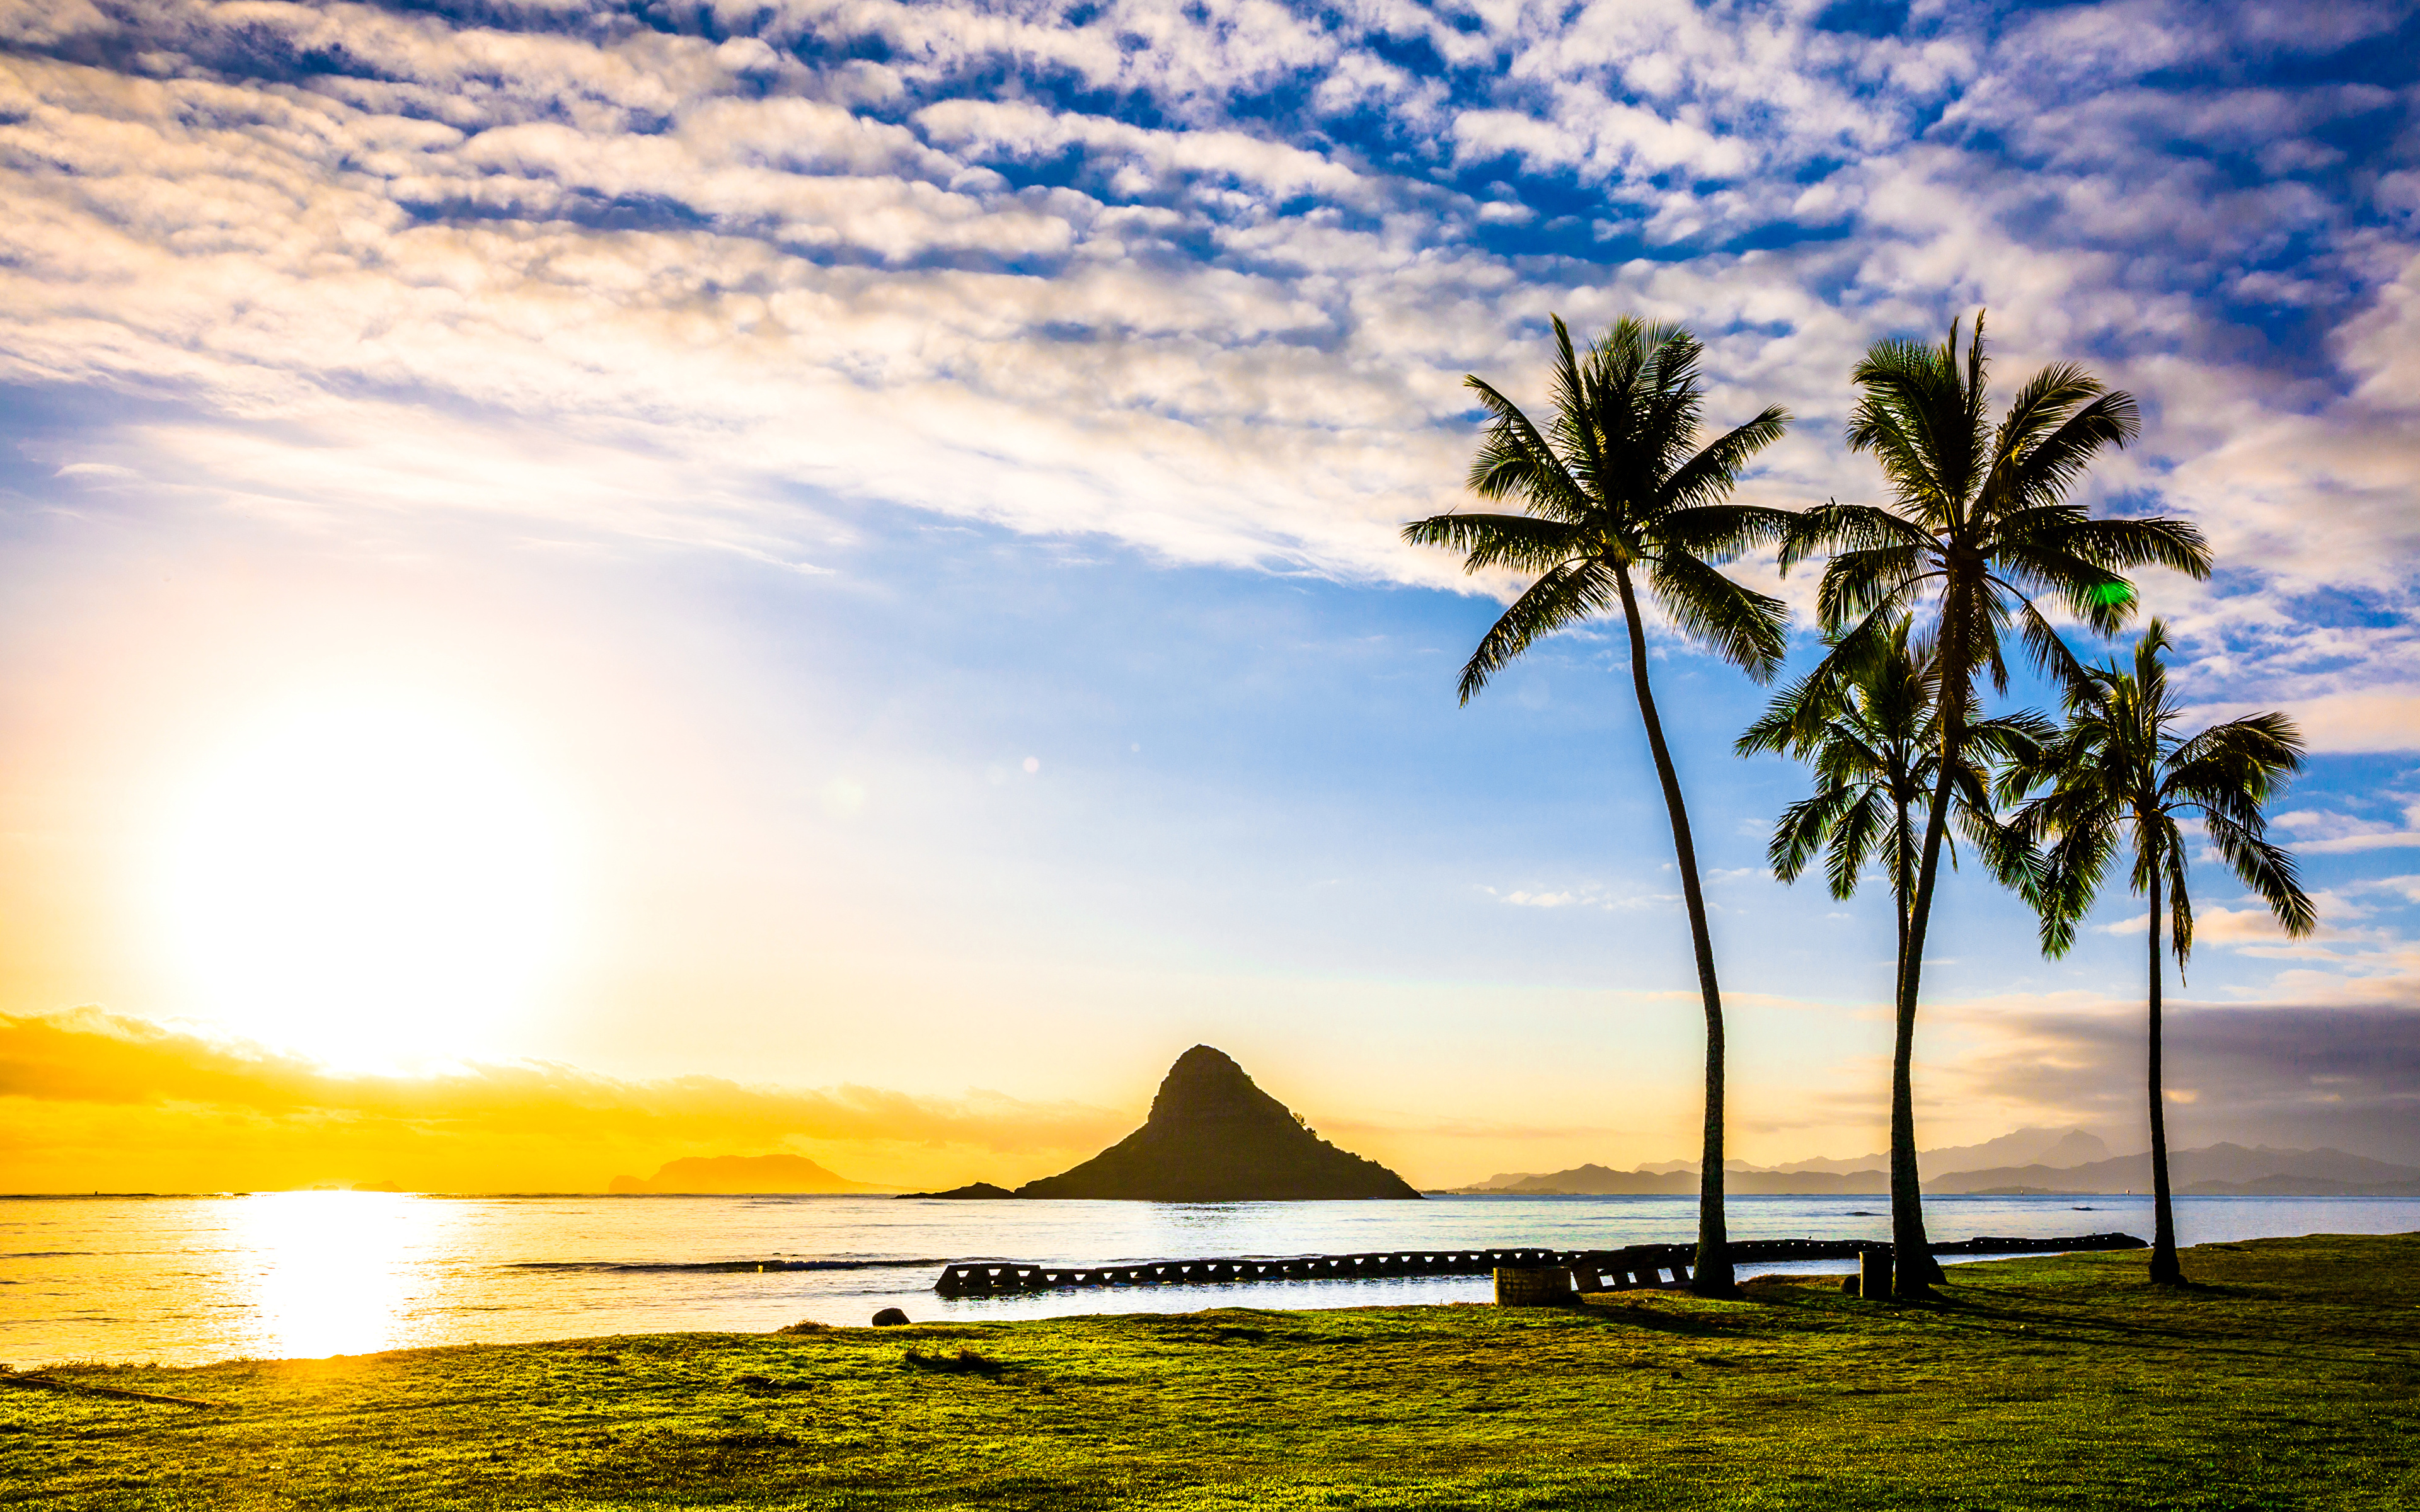 壁紙 3840x2400 アメリカ合衆国 風景写真 朝焼けと日没 海岸 ハワイ州 ヤシ 雲 太陽 自然 ダウンロード 写真